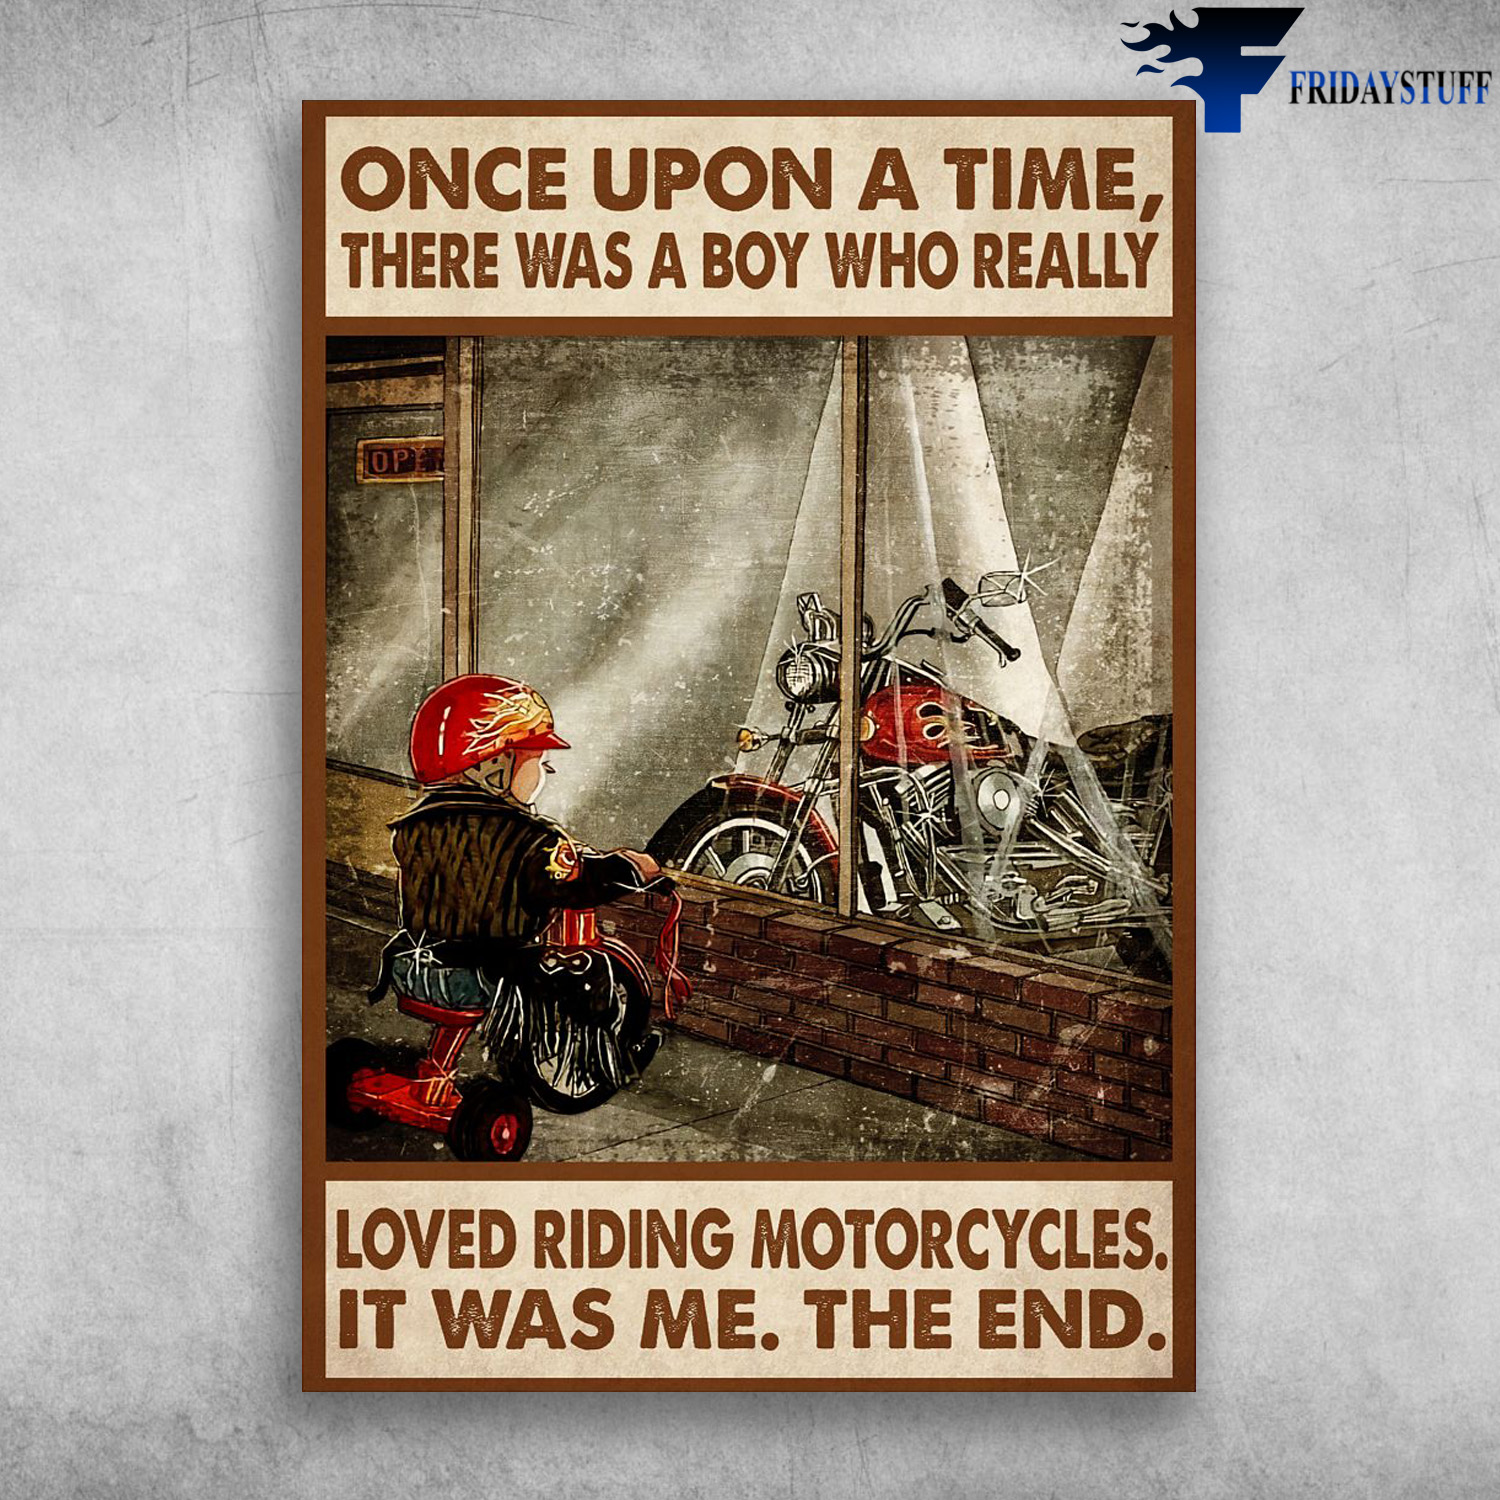 biker boyz poster